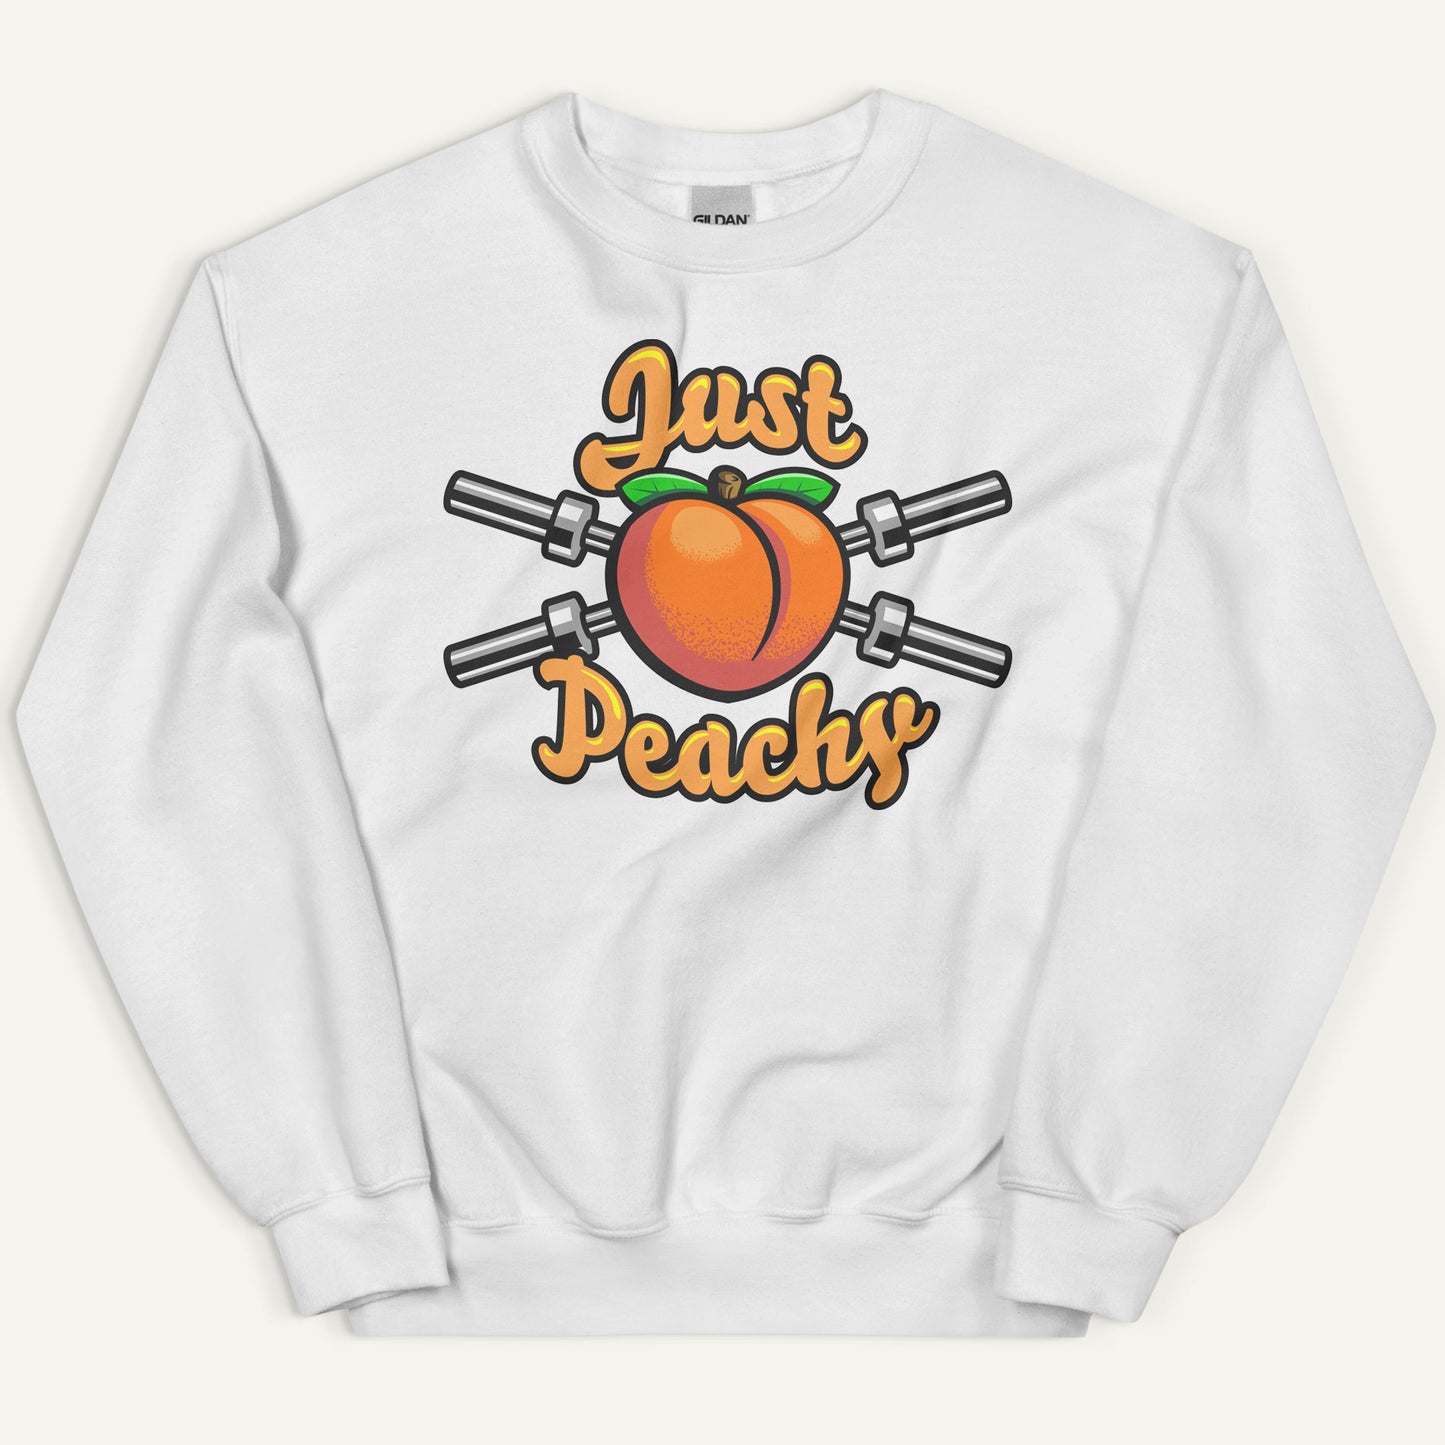 Just Peachy Sweatshirt